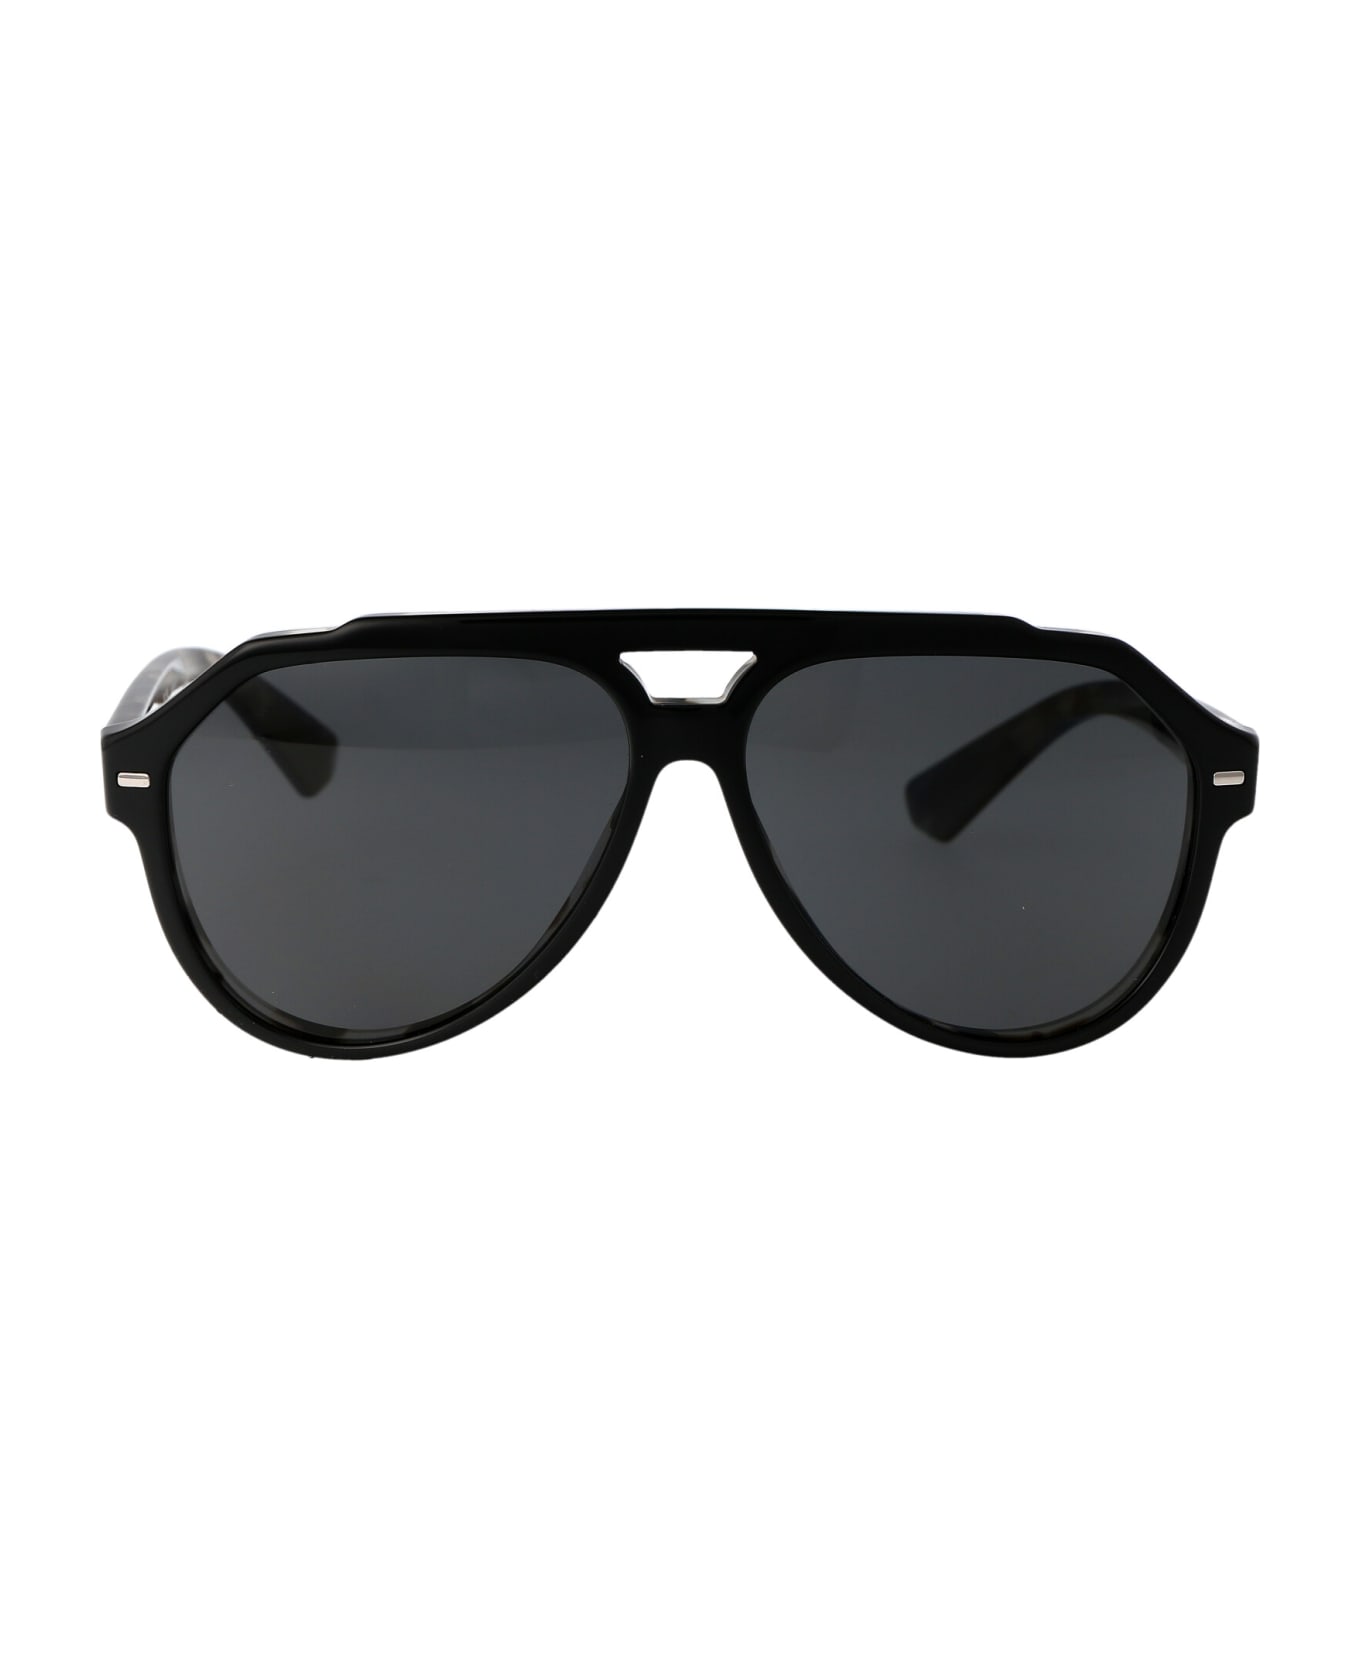 Dolce & Gabbana Eyewear 0dg4452 Sunglasses - 340387 Black On Grey Havana